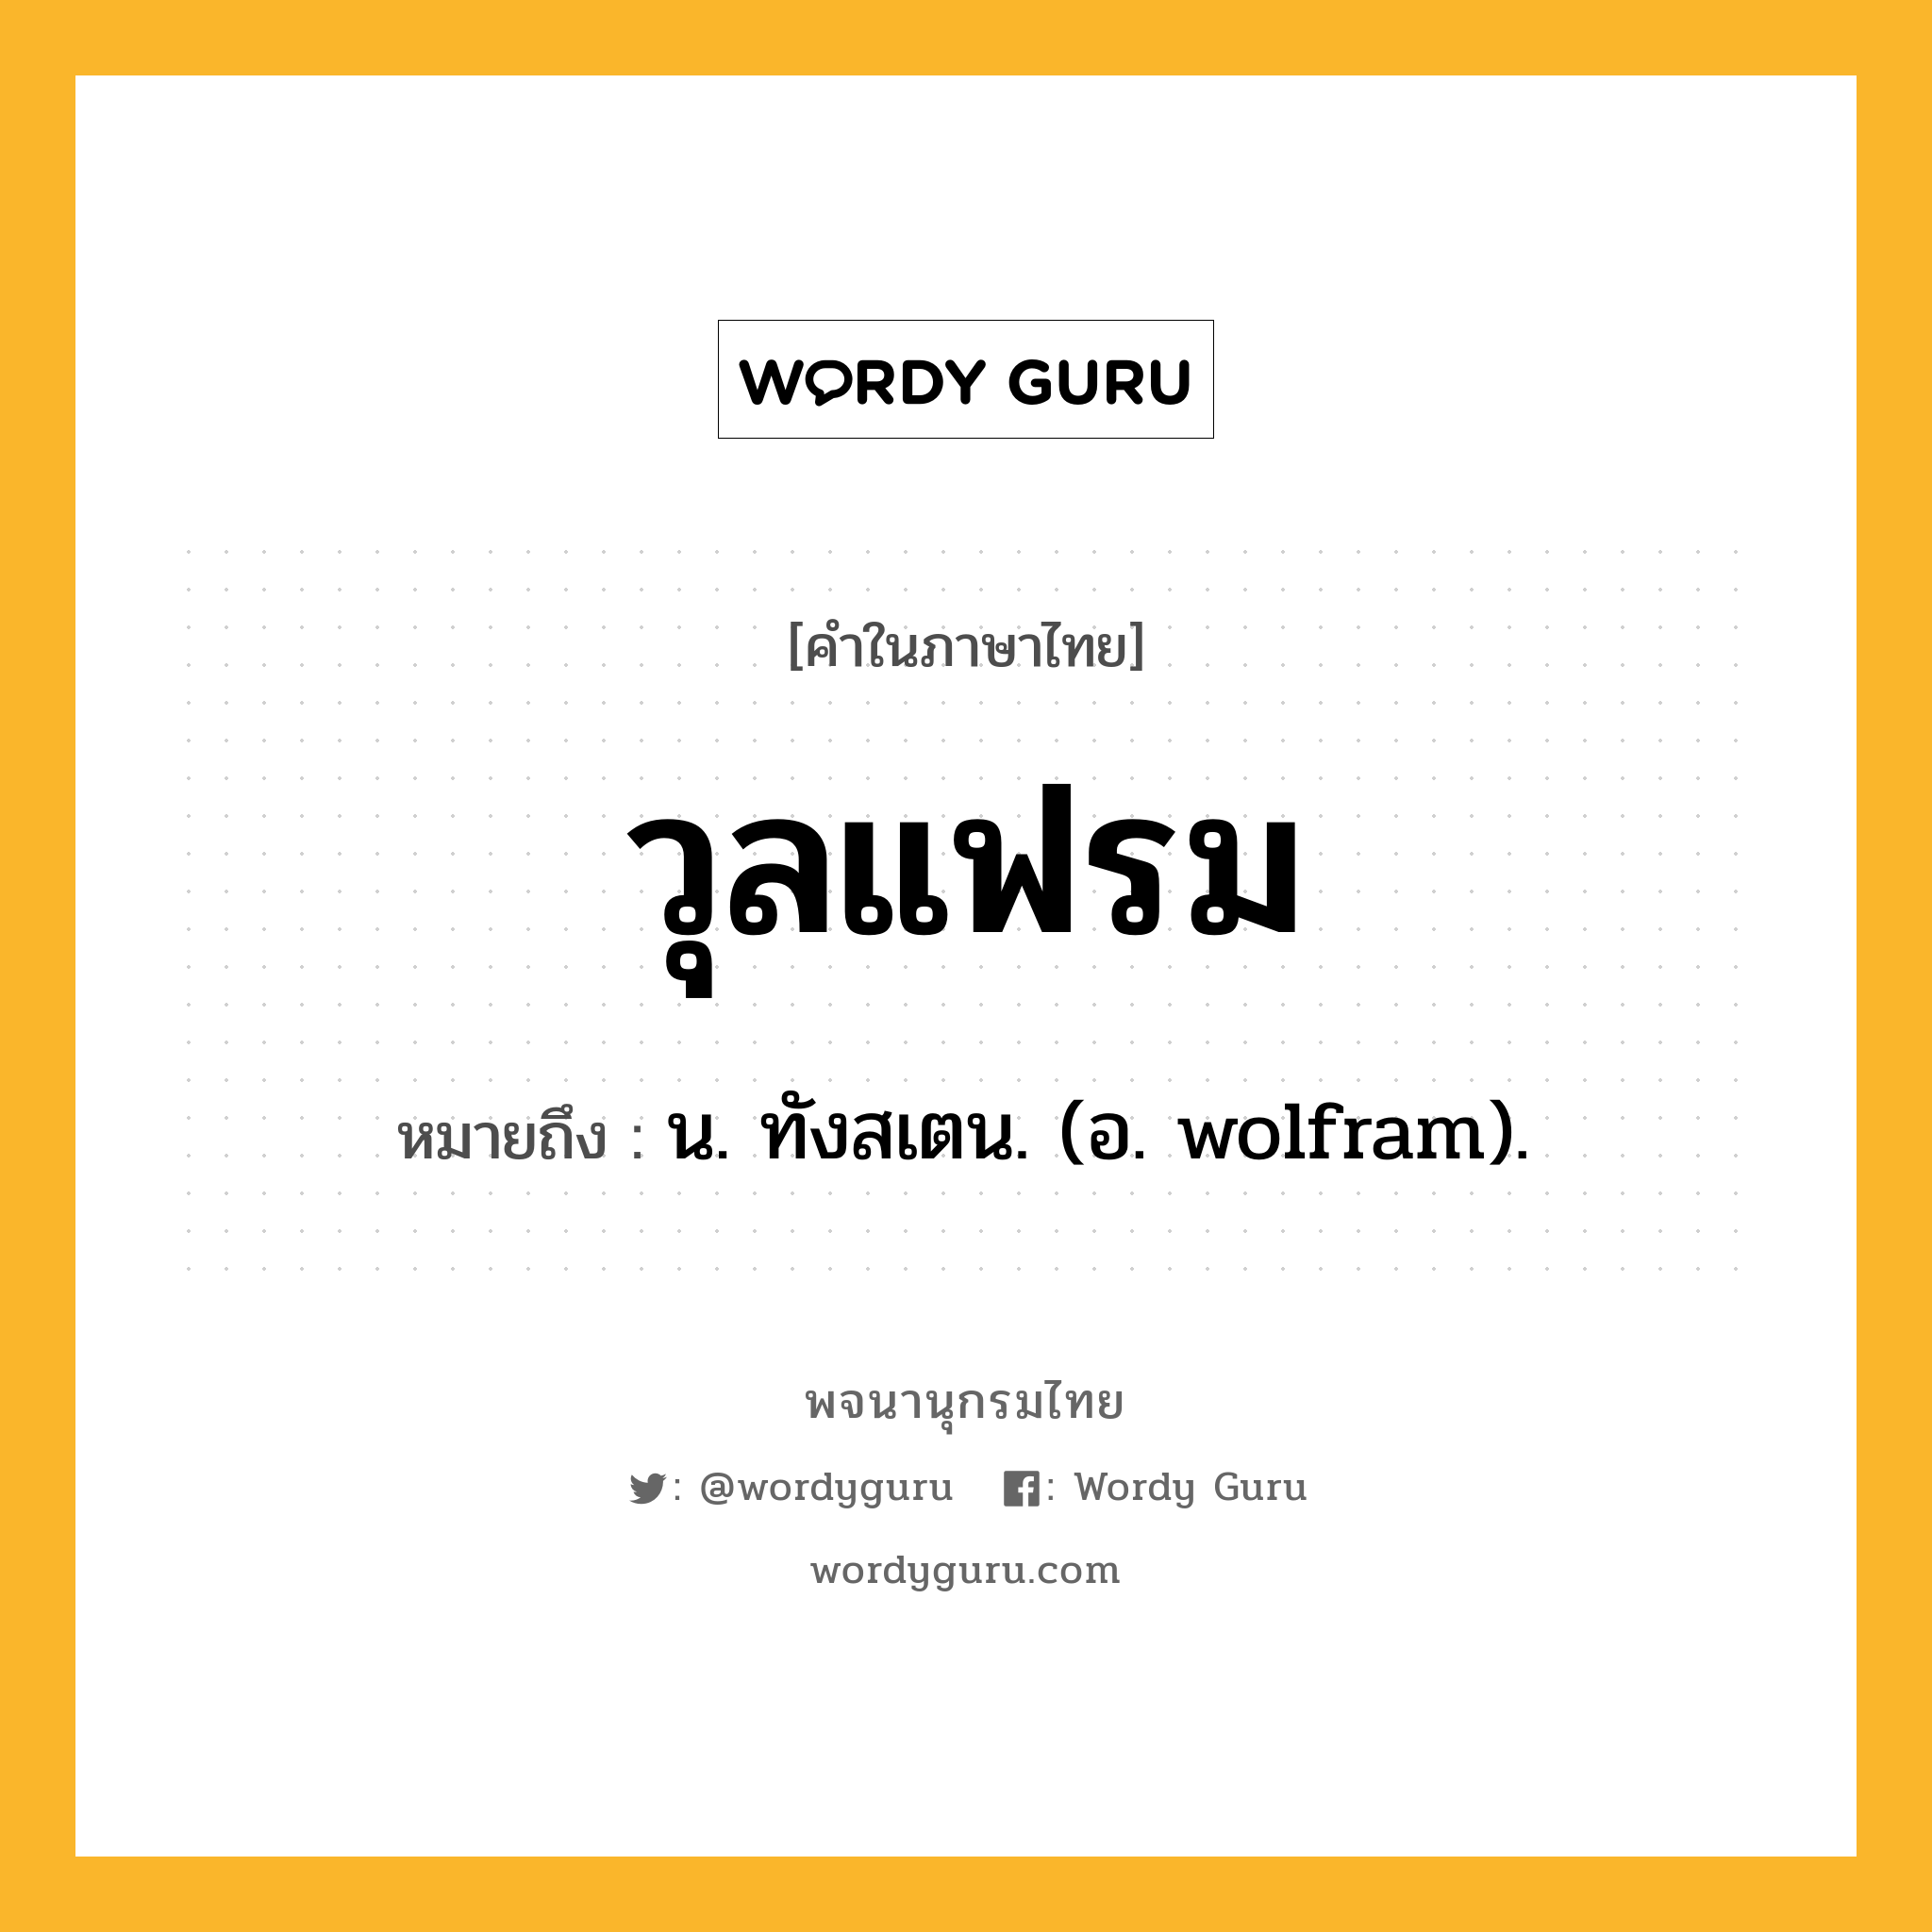 วุลแฟรม หมายถึงอะไร?, คำในภาษาไทย วุลแฟรม หมายถึง น. ทังสเตน. (อ. wolfram).